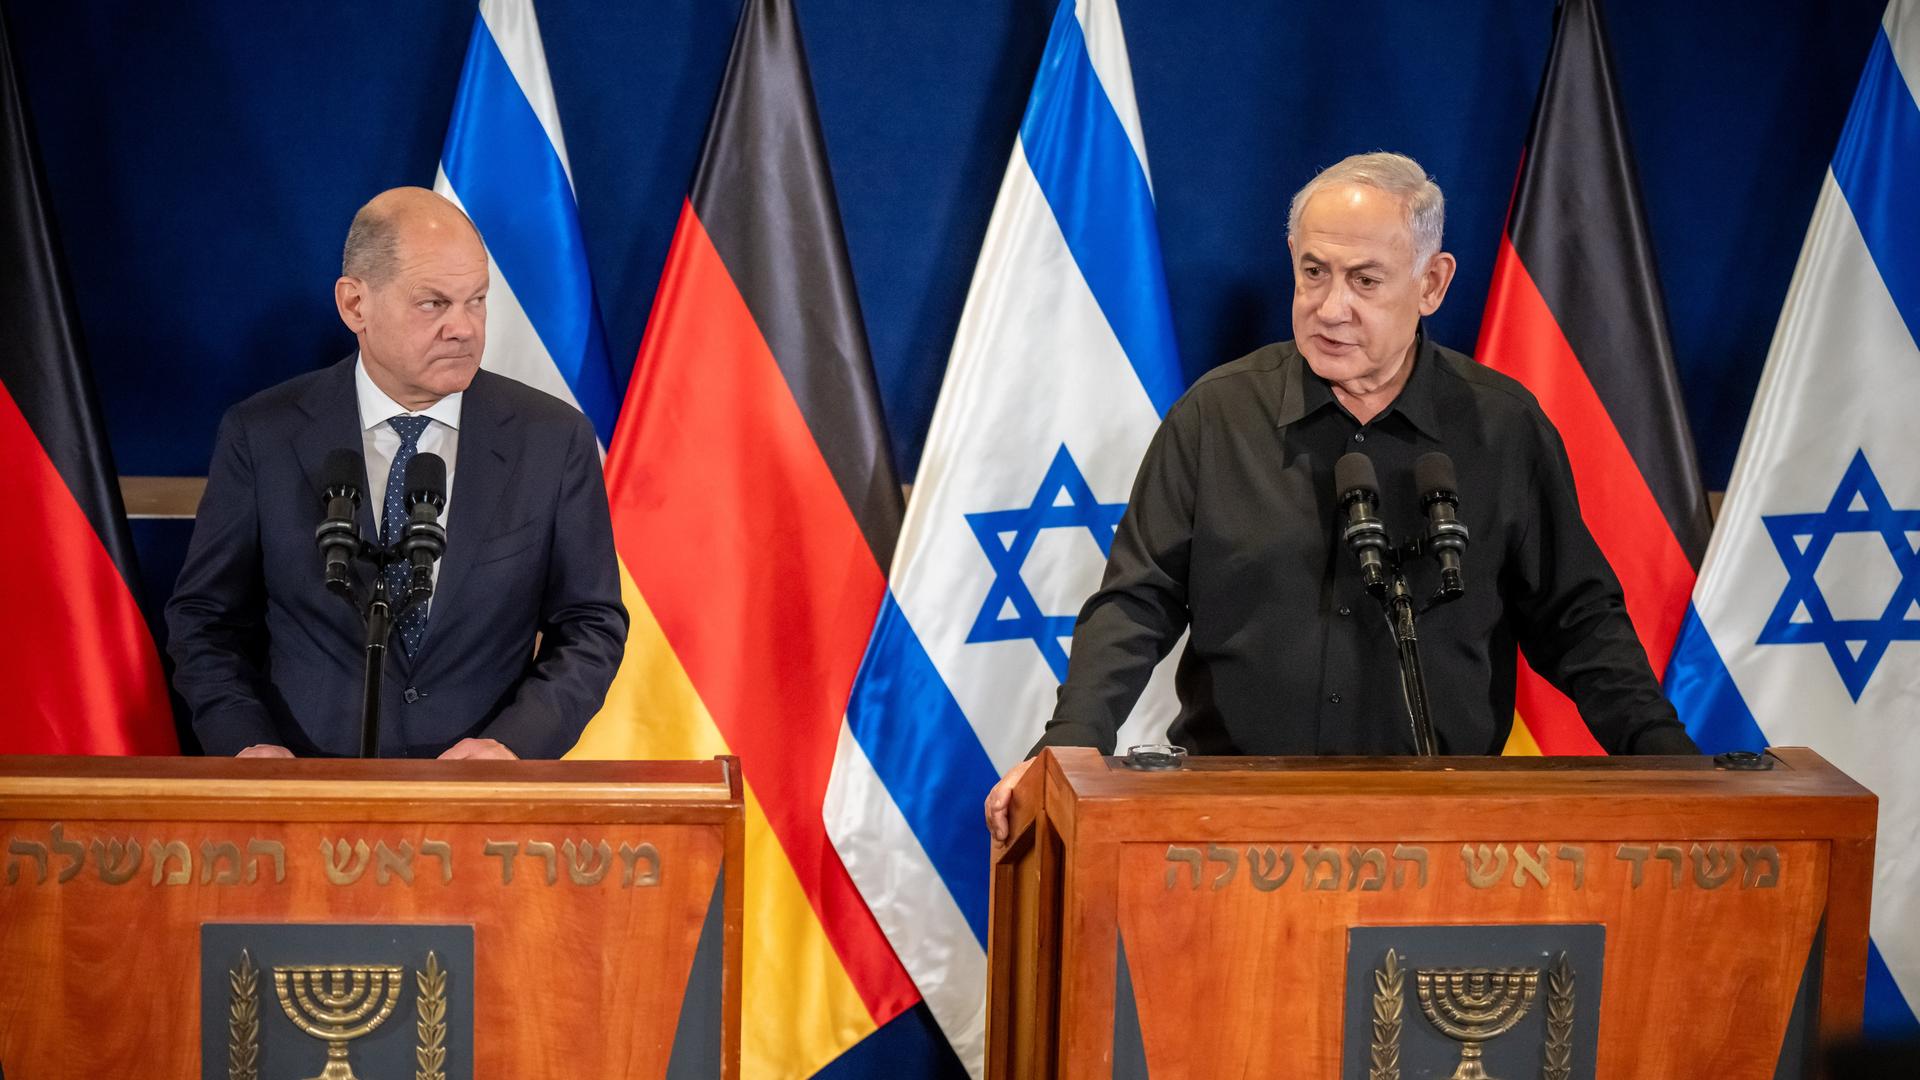 Bundeskanzler Olaf Scholz (SPD) nimmt neben Benjamin Netanjahu (r), Ministerpräsident von Israel, an einer Pressebegegnung nach dem Gespräch der beiden regierungschefs teil. Im Hintergrund die Flaggen der Bundesrepublik und Israels.